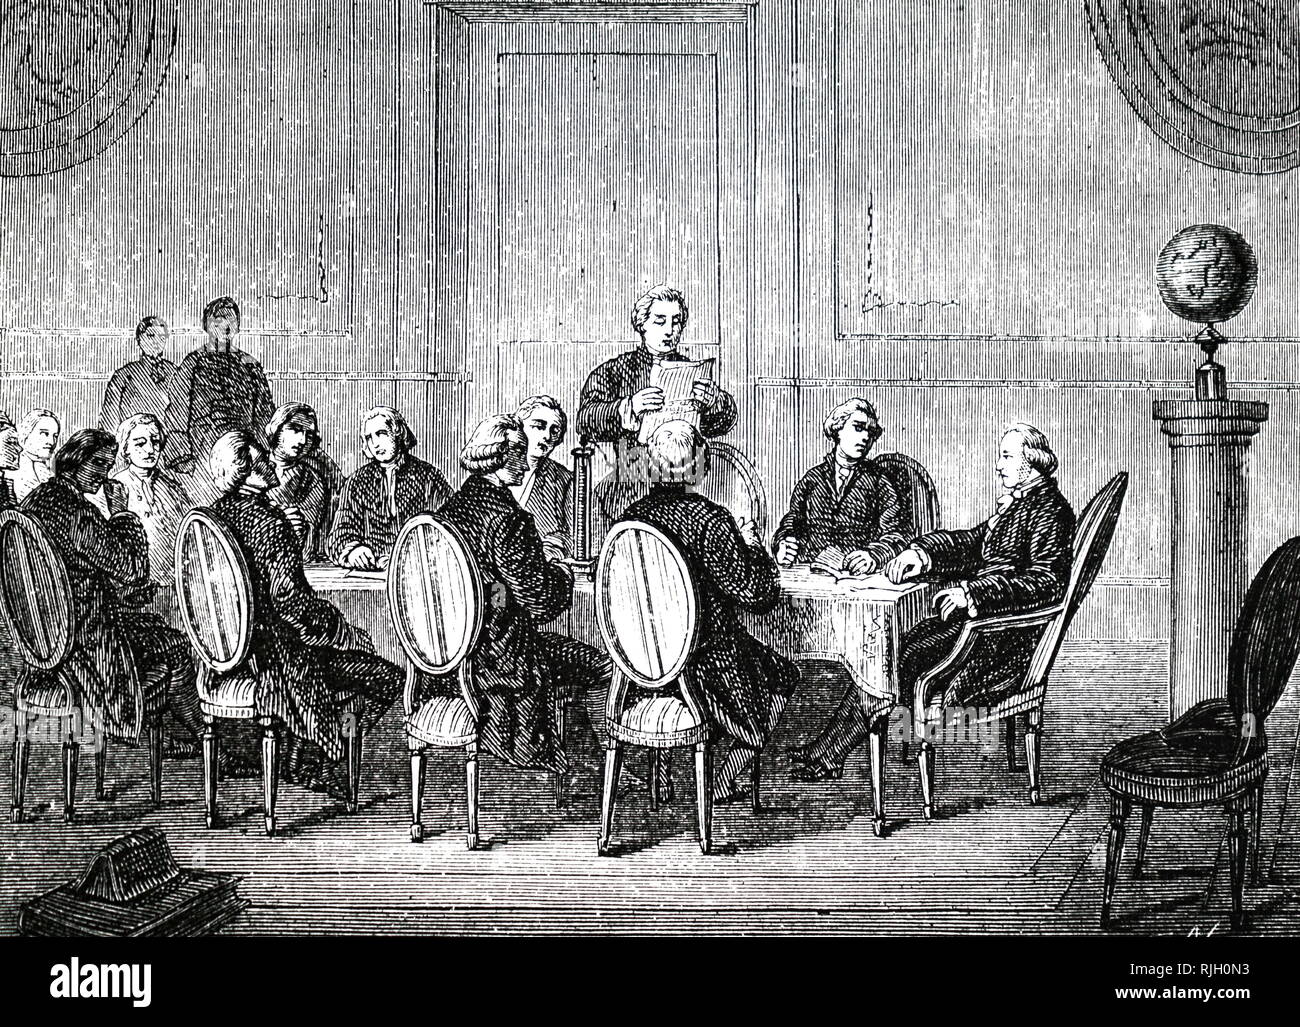 Eine Gravur, die Rekonstruktion eines Künstlers von der Sitzung der Royal Society im April 1800, als Joseph Banken lesen Sie auf das Schreiben der Gesellschaft Volta über seine elektrische Stapel (Teig). Vom 19. Jahrhundert Stockfoto